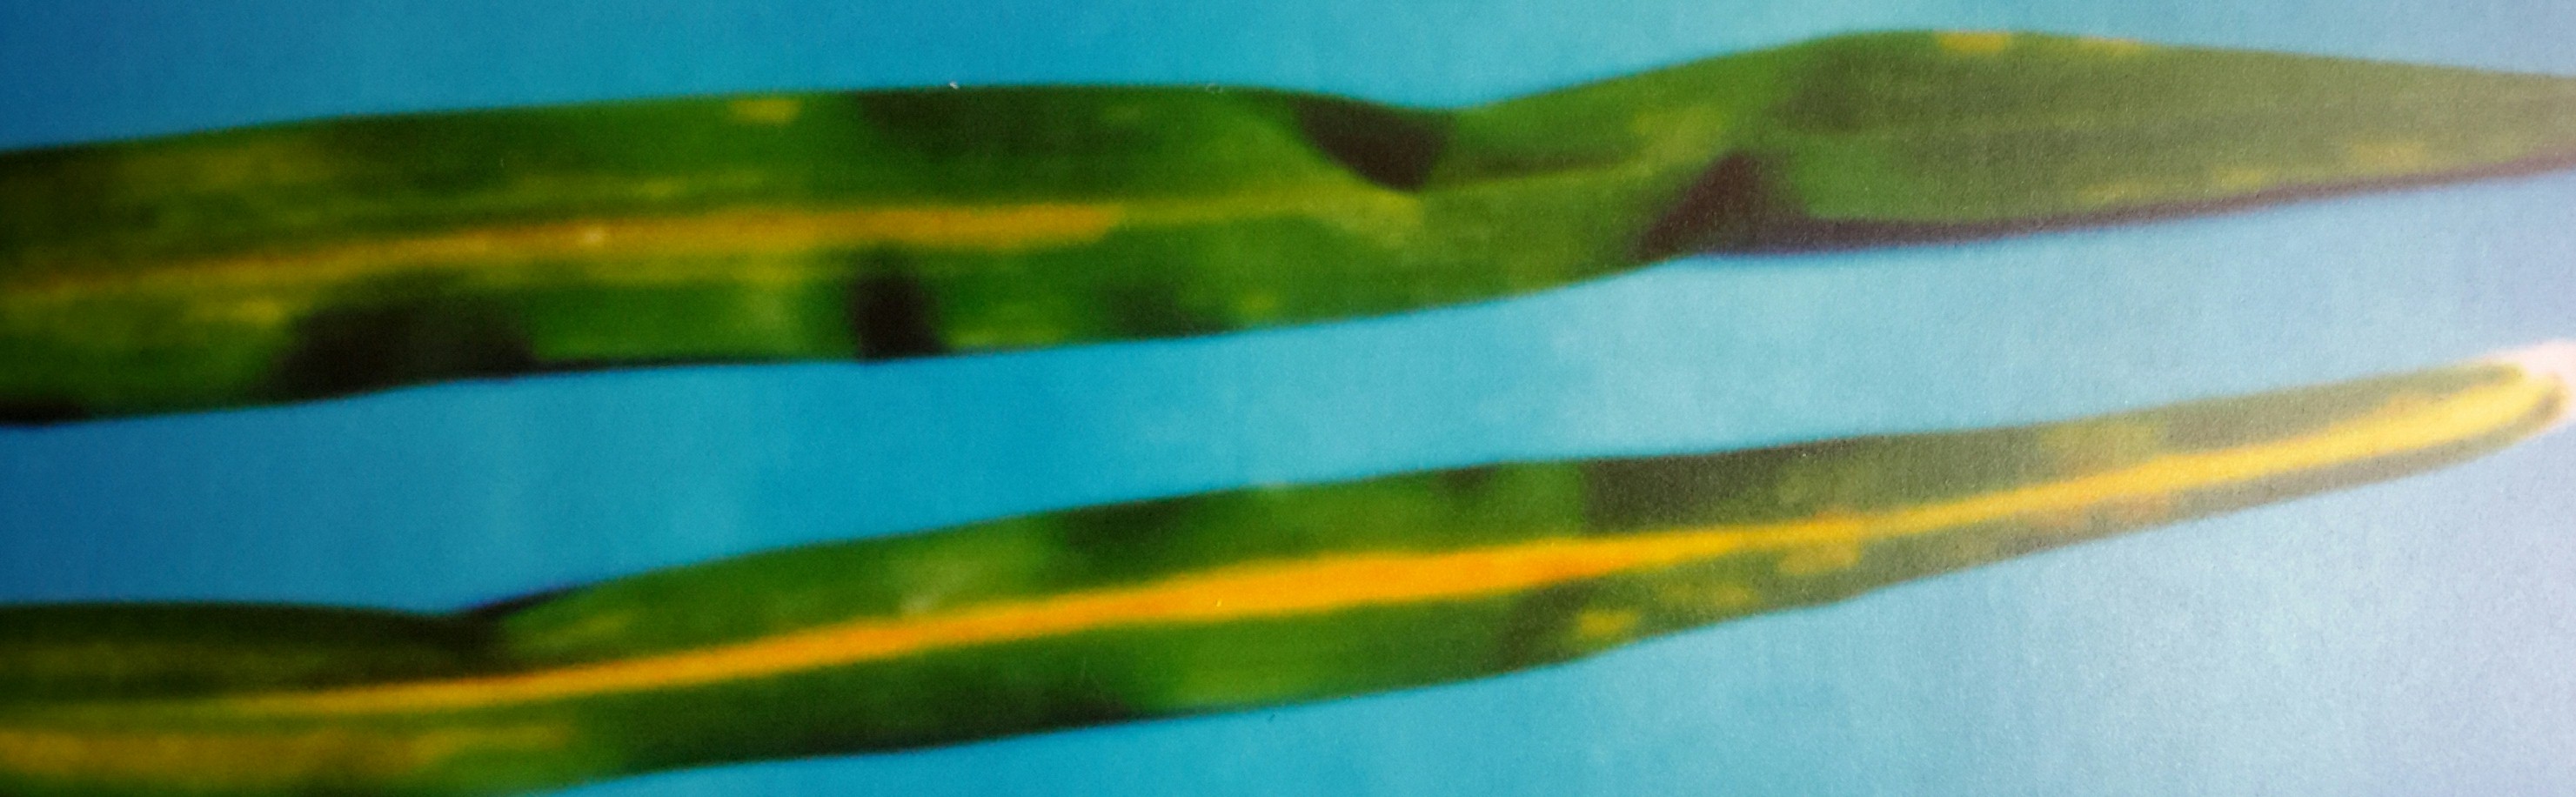 <p><b><p>Folha de lírio amarelo (<em>Hemerocallis hybrida</em>) infectada por <em>Tomato mosaic virus</em>.</p></b></p><p>Autor: Sérgio Viana</p>